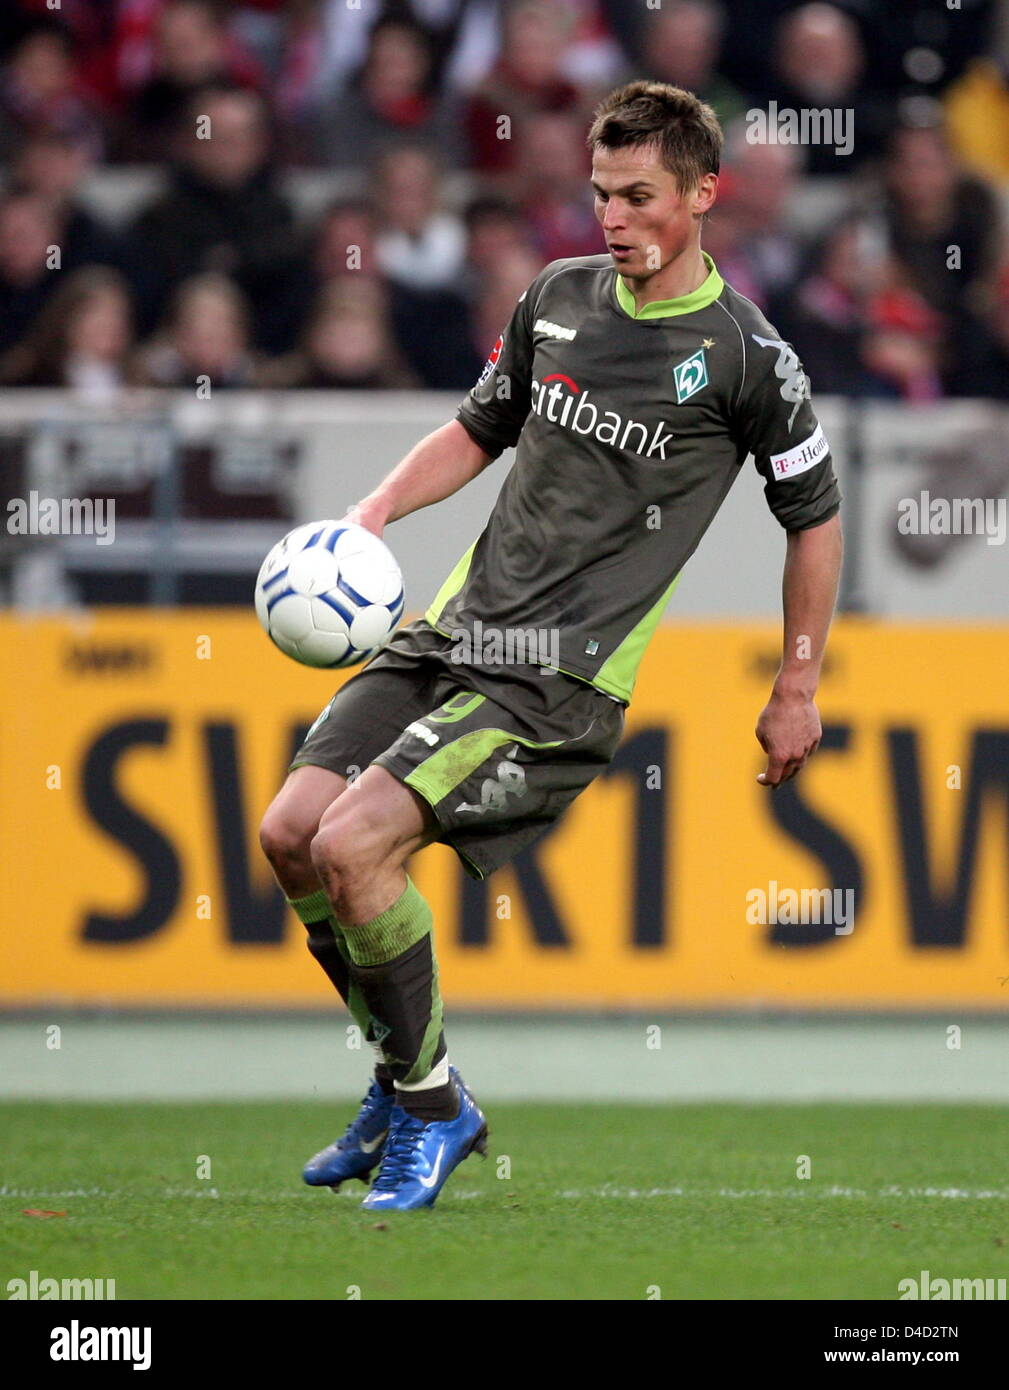 La Suédois Markus Rosenberg contrôle la balle pendant la vs Stuttgart Werder Brême Bundesliga match à Stuttgart, Allemagne, 08 mars 2008. Stuttgart a remporté le match 6-3. Photo : BERND WEISSBROD Banque D'Images